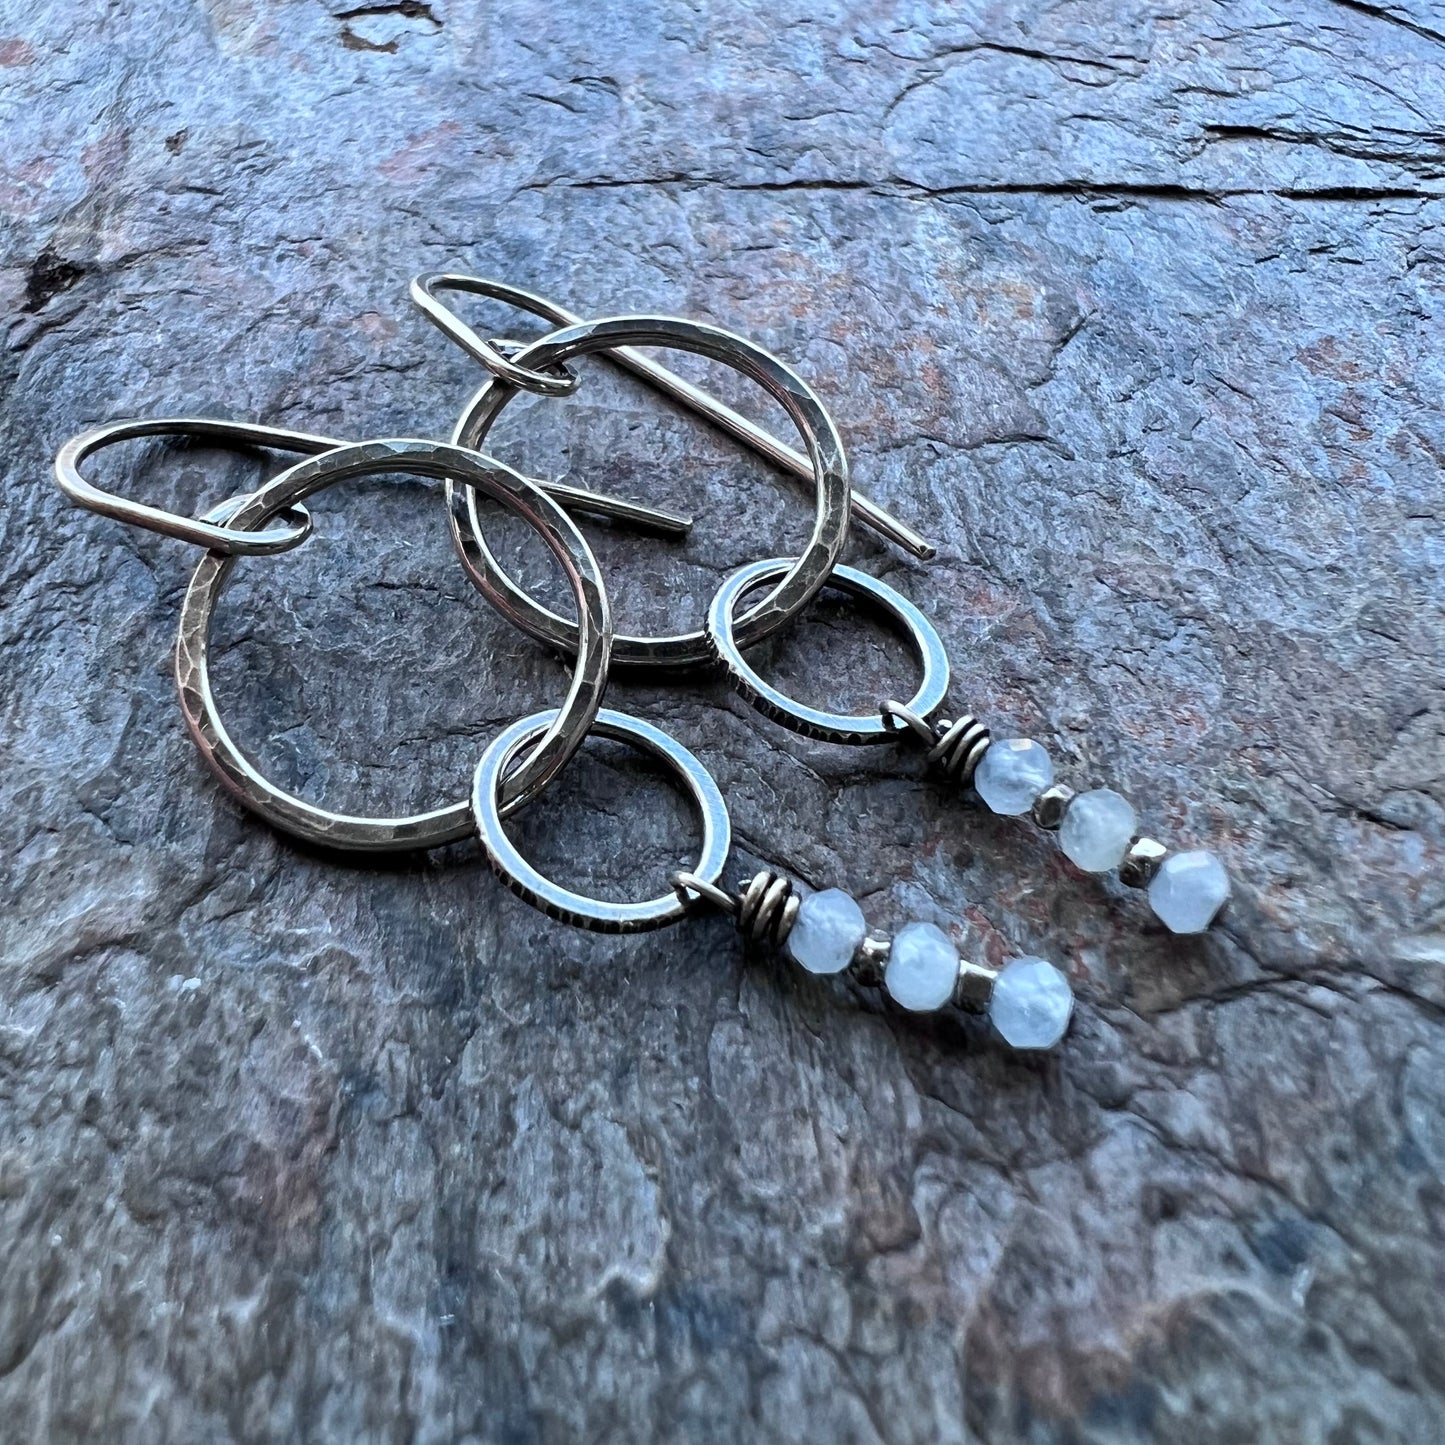 Aquamarine Sterling Silver Earrings - Genuine Aquamarine Rondelles and Hammered Sterling Silver Circle Earrings